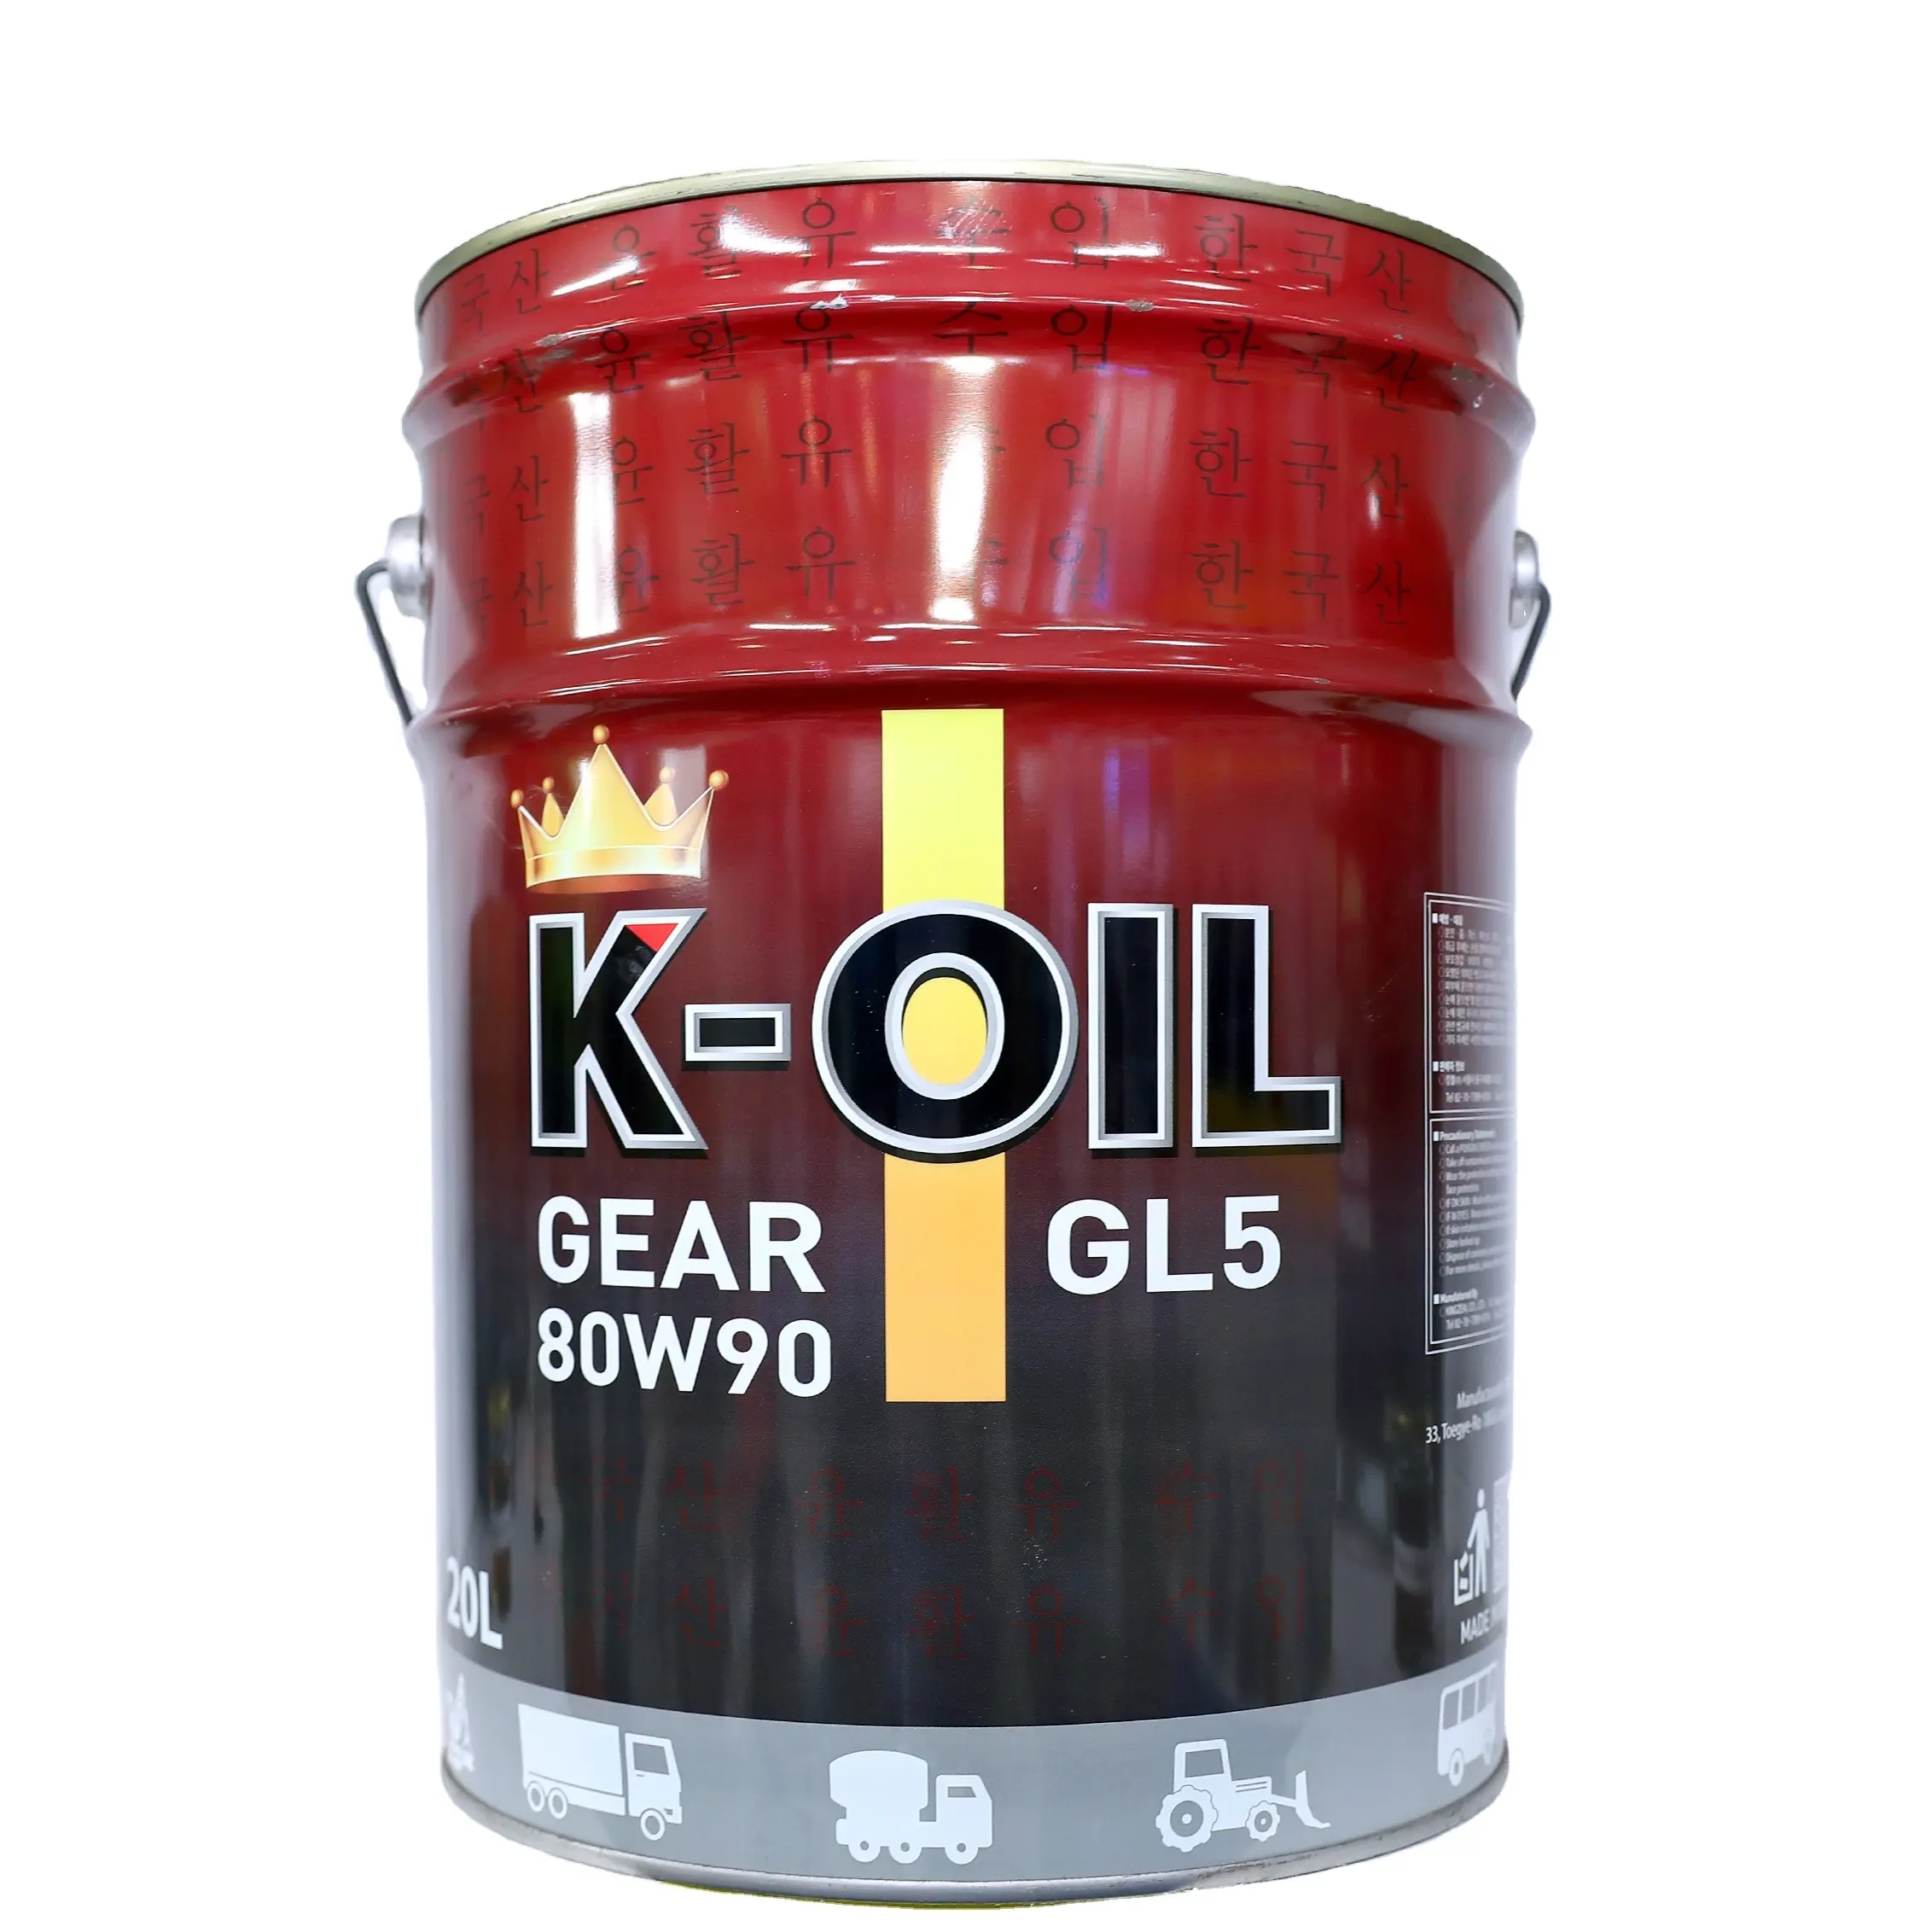 K-Oil GEAR GL-5 80 W90 bietet hervorragende Kraft übertragungs leistung und oxidativen Abbau made in Vietnam